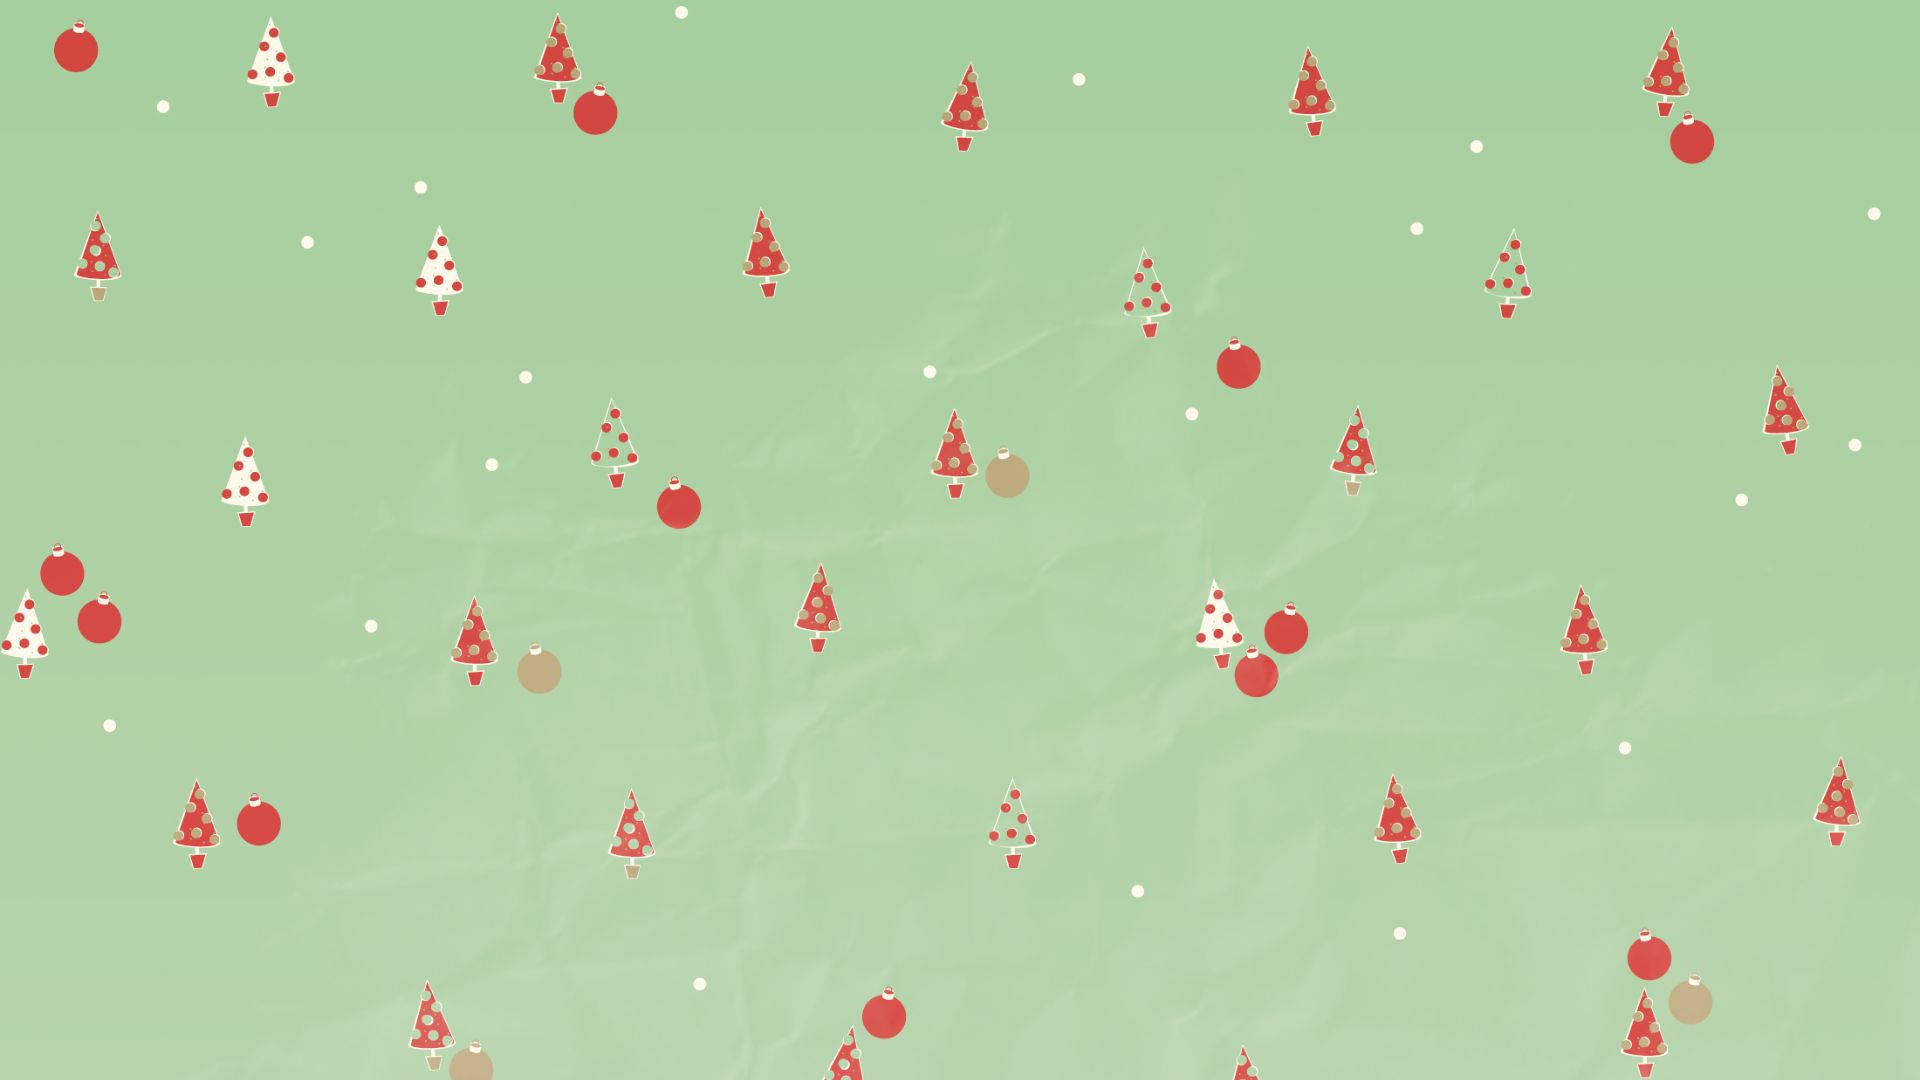 Tiny Kawaii Christmas Trees And Balls Wallpaper